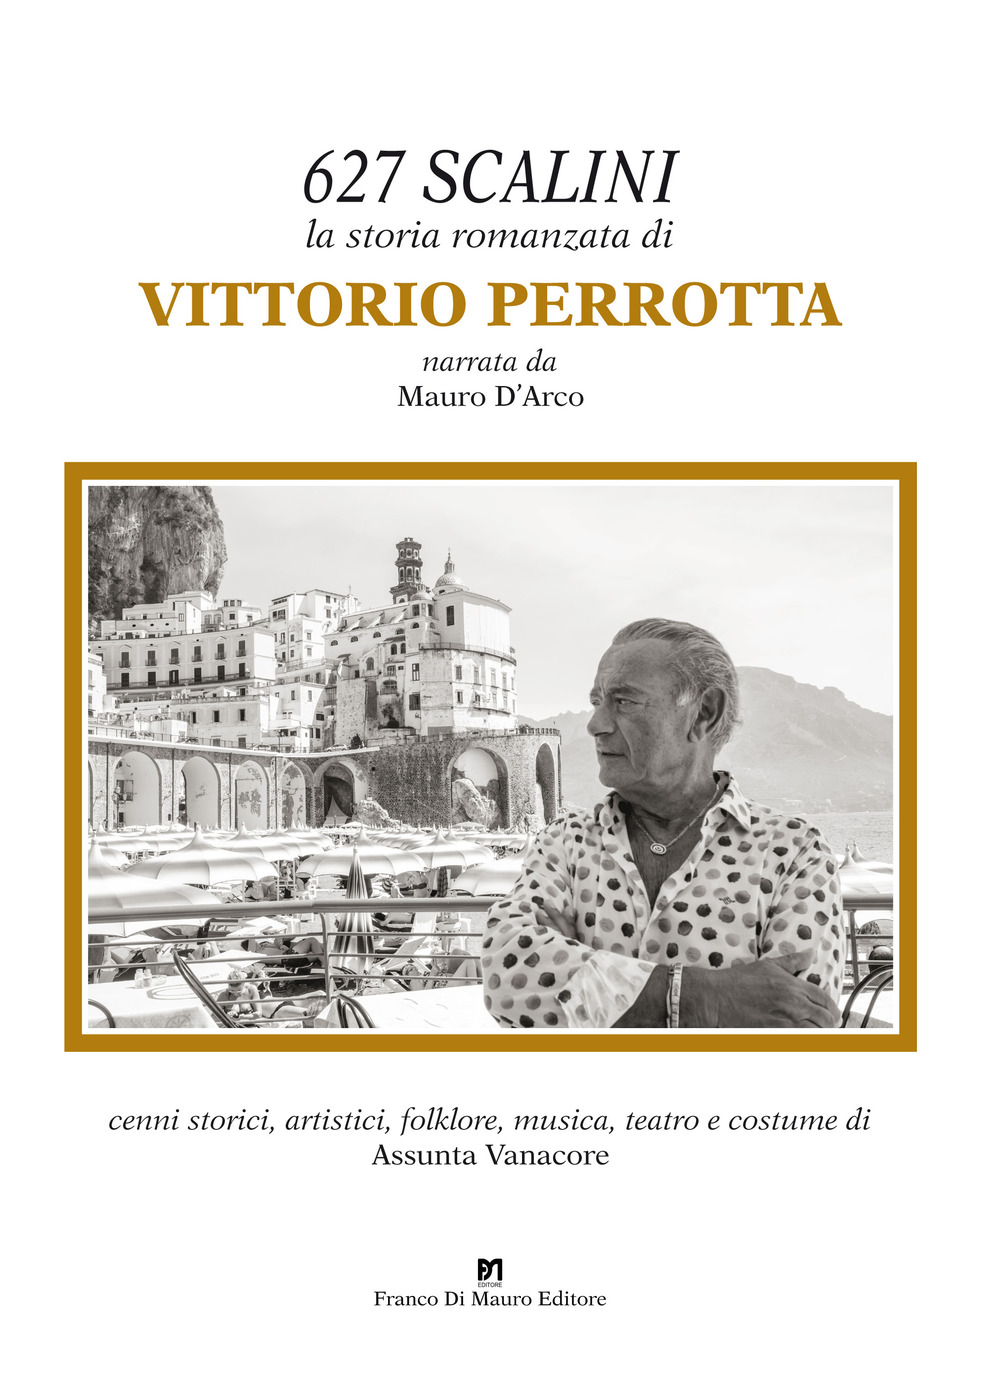 627 scalini. La storia romanzata di Vittorio Perrotta. Ediz. illustrata